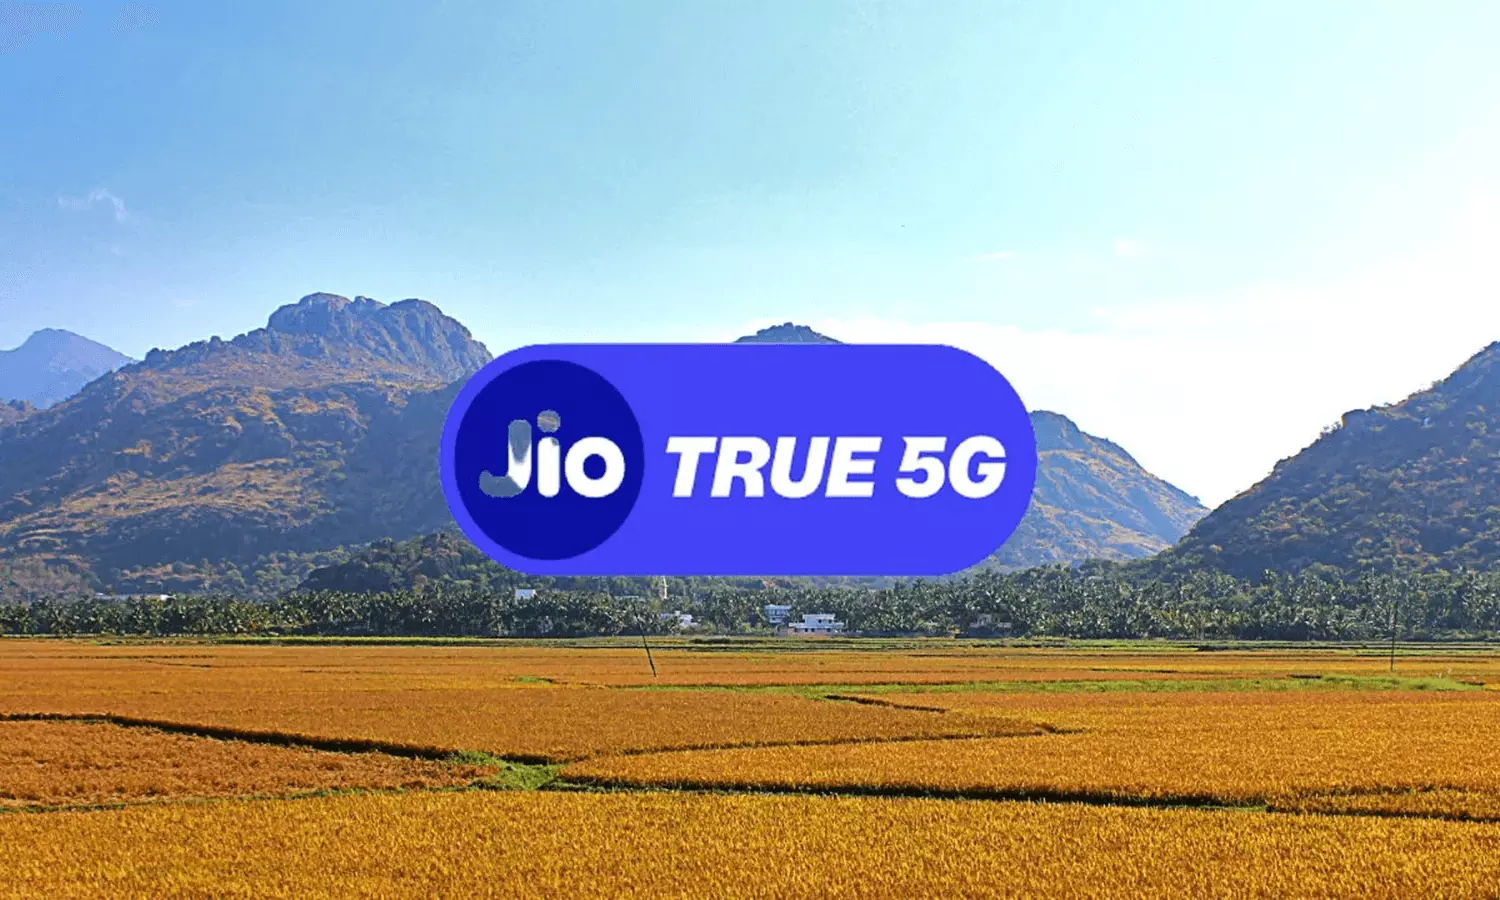 Jio Rs 909 Prepaid Recharge Plan: Jio ने लॉन्च किया नया प्रीपेड रिचार्ज प्लान, मिलेगा Zee5, SonyLIV और अन्य सब्सक्रिप्शन